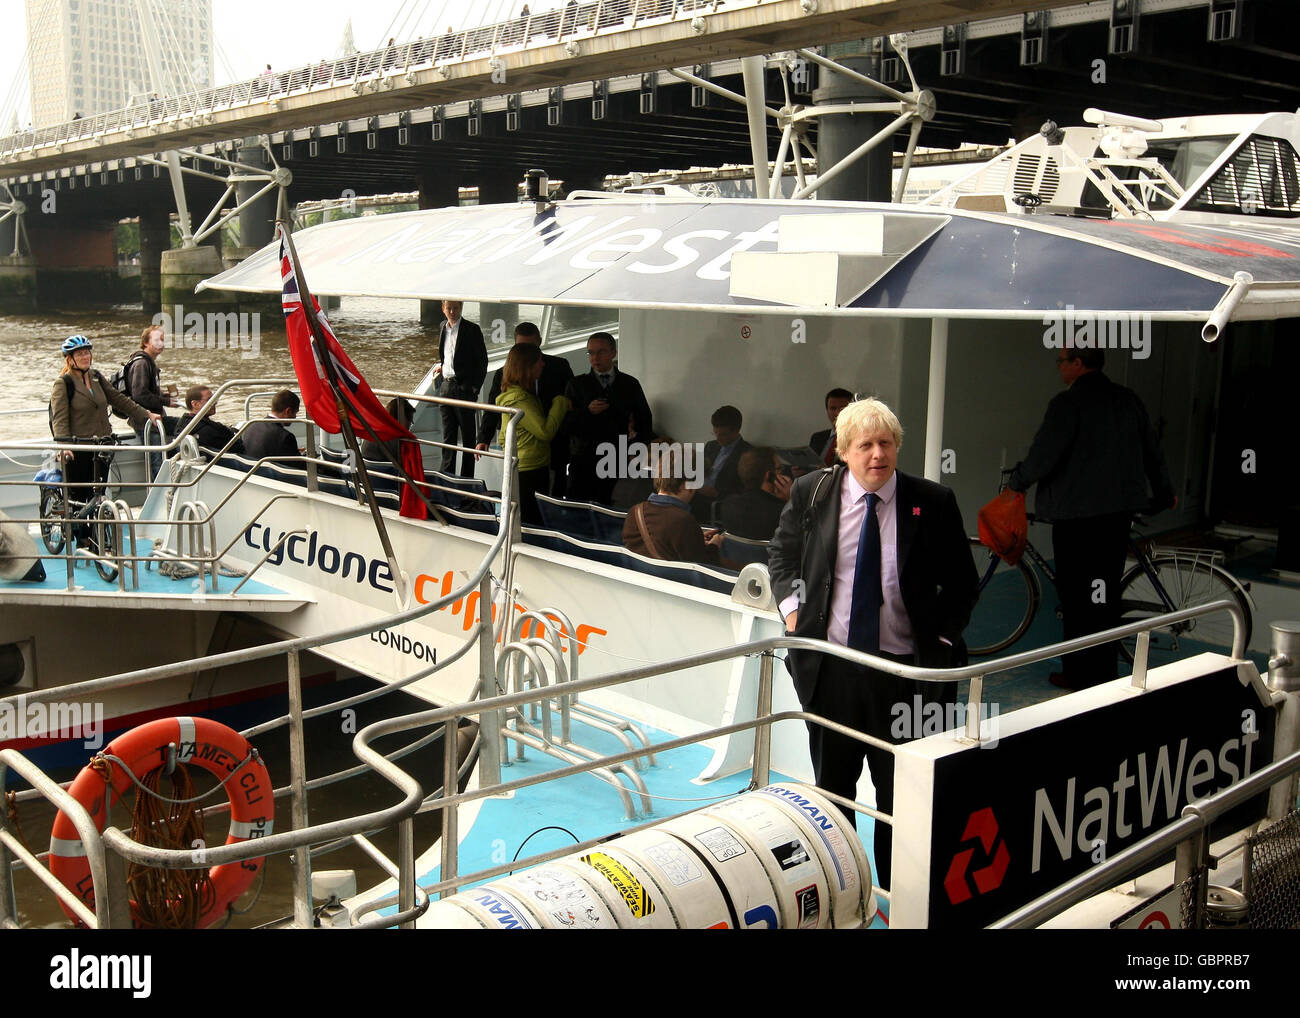 Il sindaco di Londra Boris Johnson e i pendolari salgono a bordo di una barca Thames Clipper, presso il molo Embankment nel centro di Londra, poiché uno sciopero di 48 ore da parte della RMT Union causa un'interruzione diffusa della metropolitana di Londra. Foto Stock